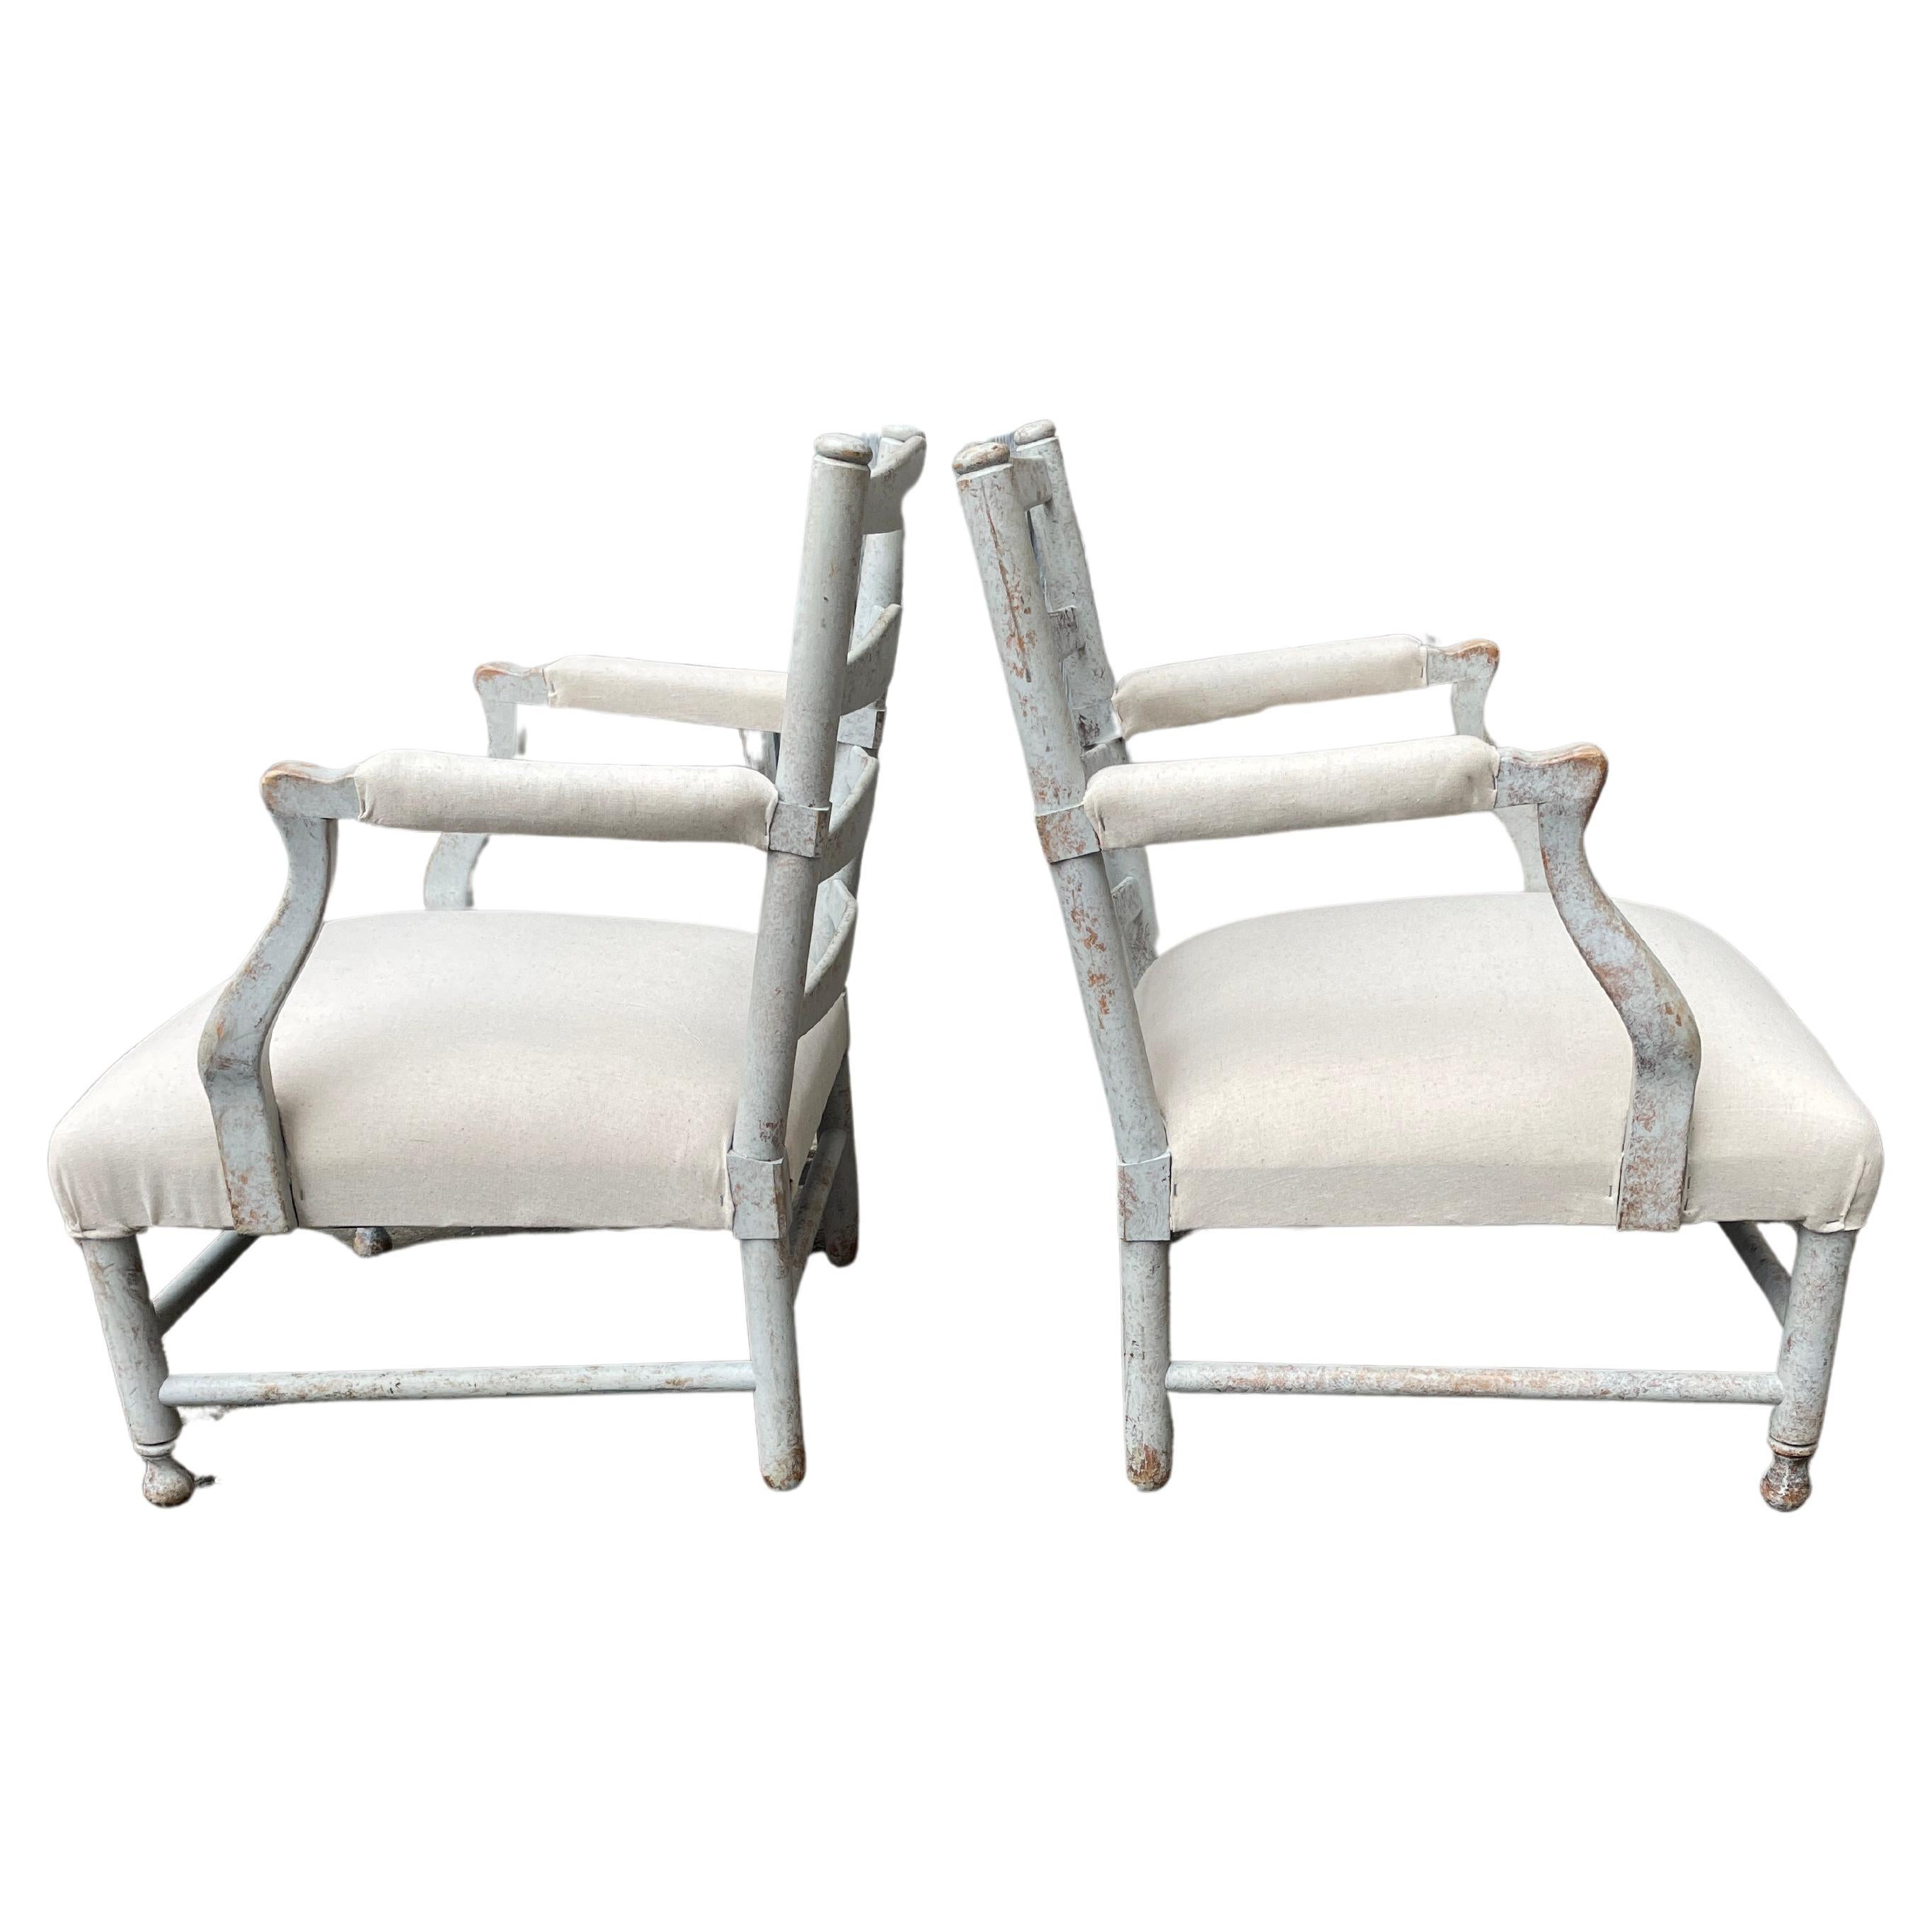 Fauteuils scandinaves Gripsholm peints en gris, une paire

Paire d'élégants fauteuils suédois, d'après le modèle traditionnel de Gripsholm. Le modèle porte le nom du château de Gripsholm, où le roi Gustav III a utilisé des chaises de ce type à la